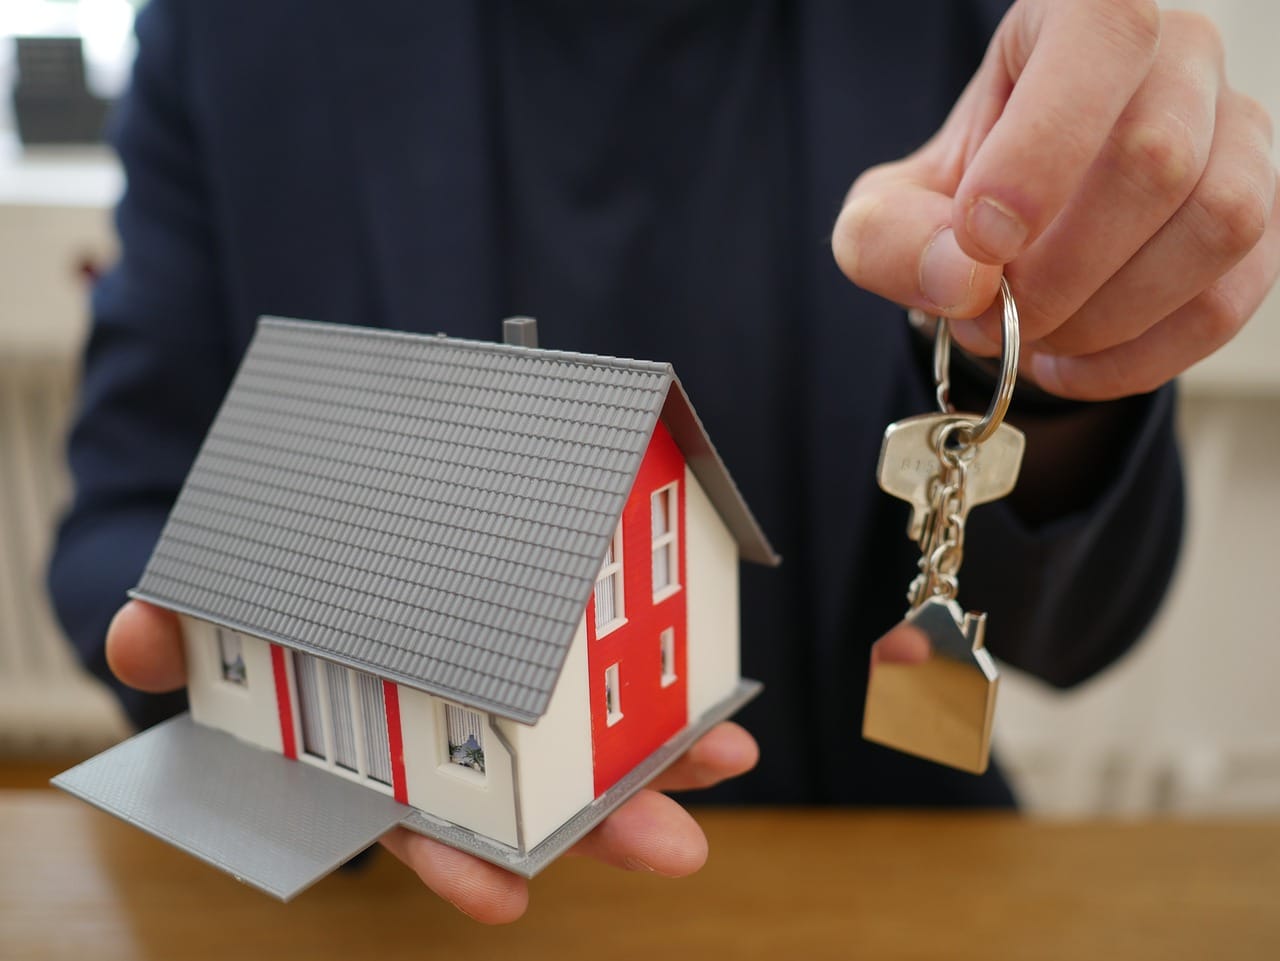 Louer un appartement pour 1 mois : les droits et obligations